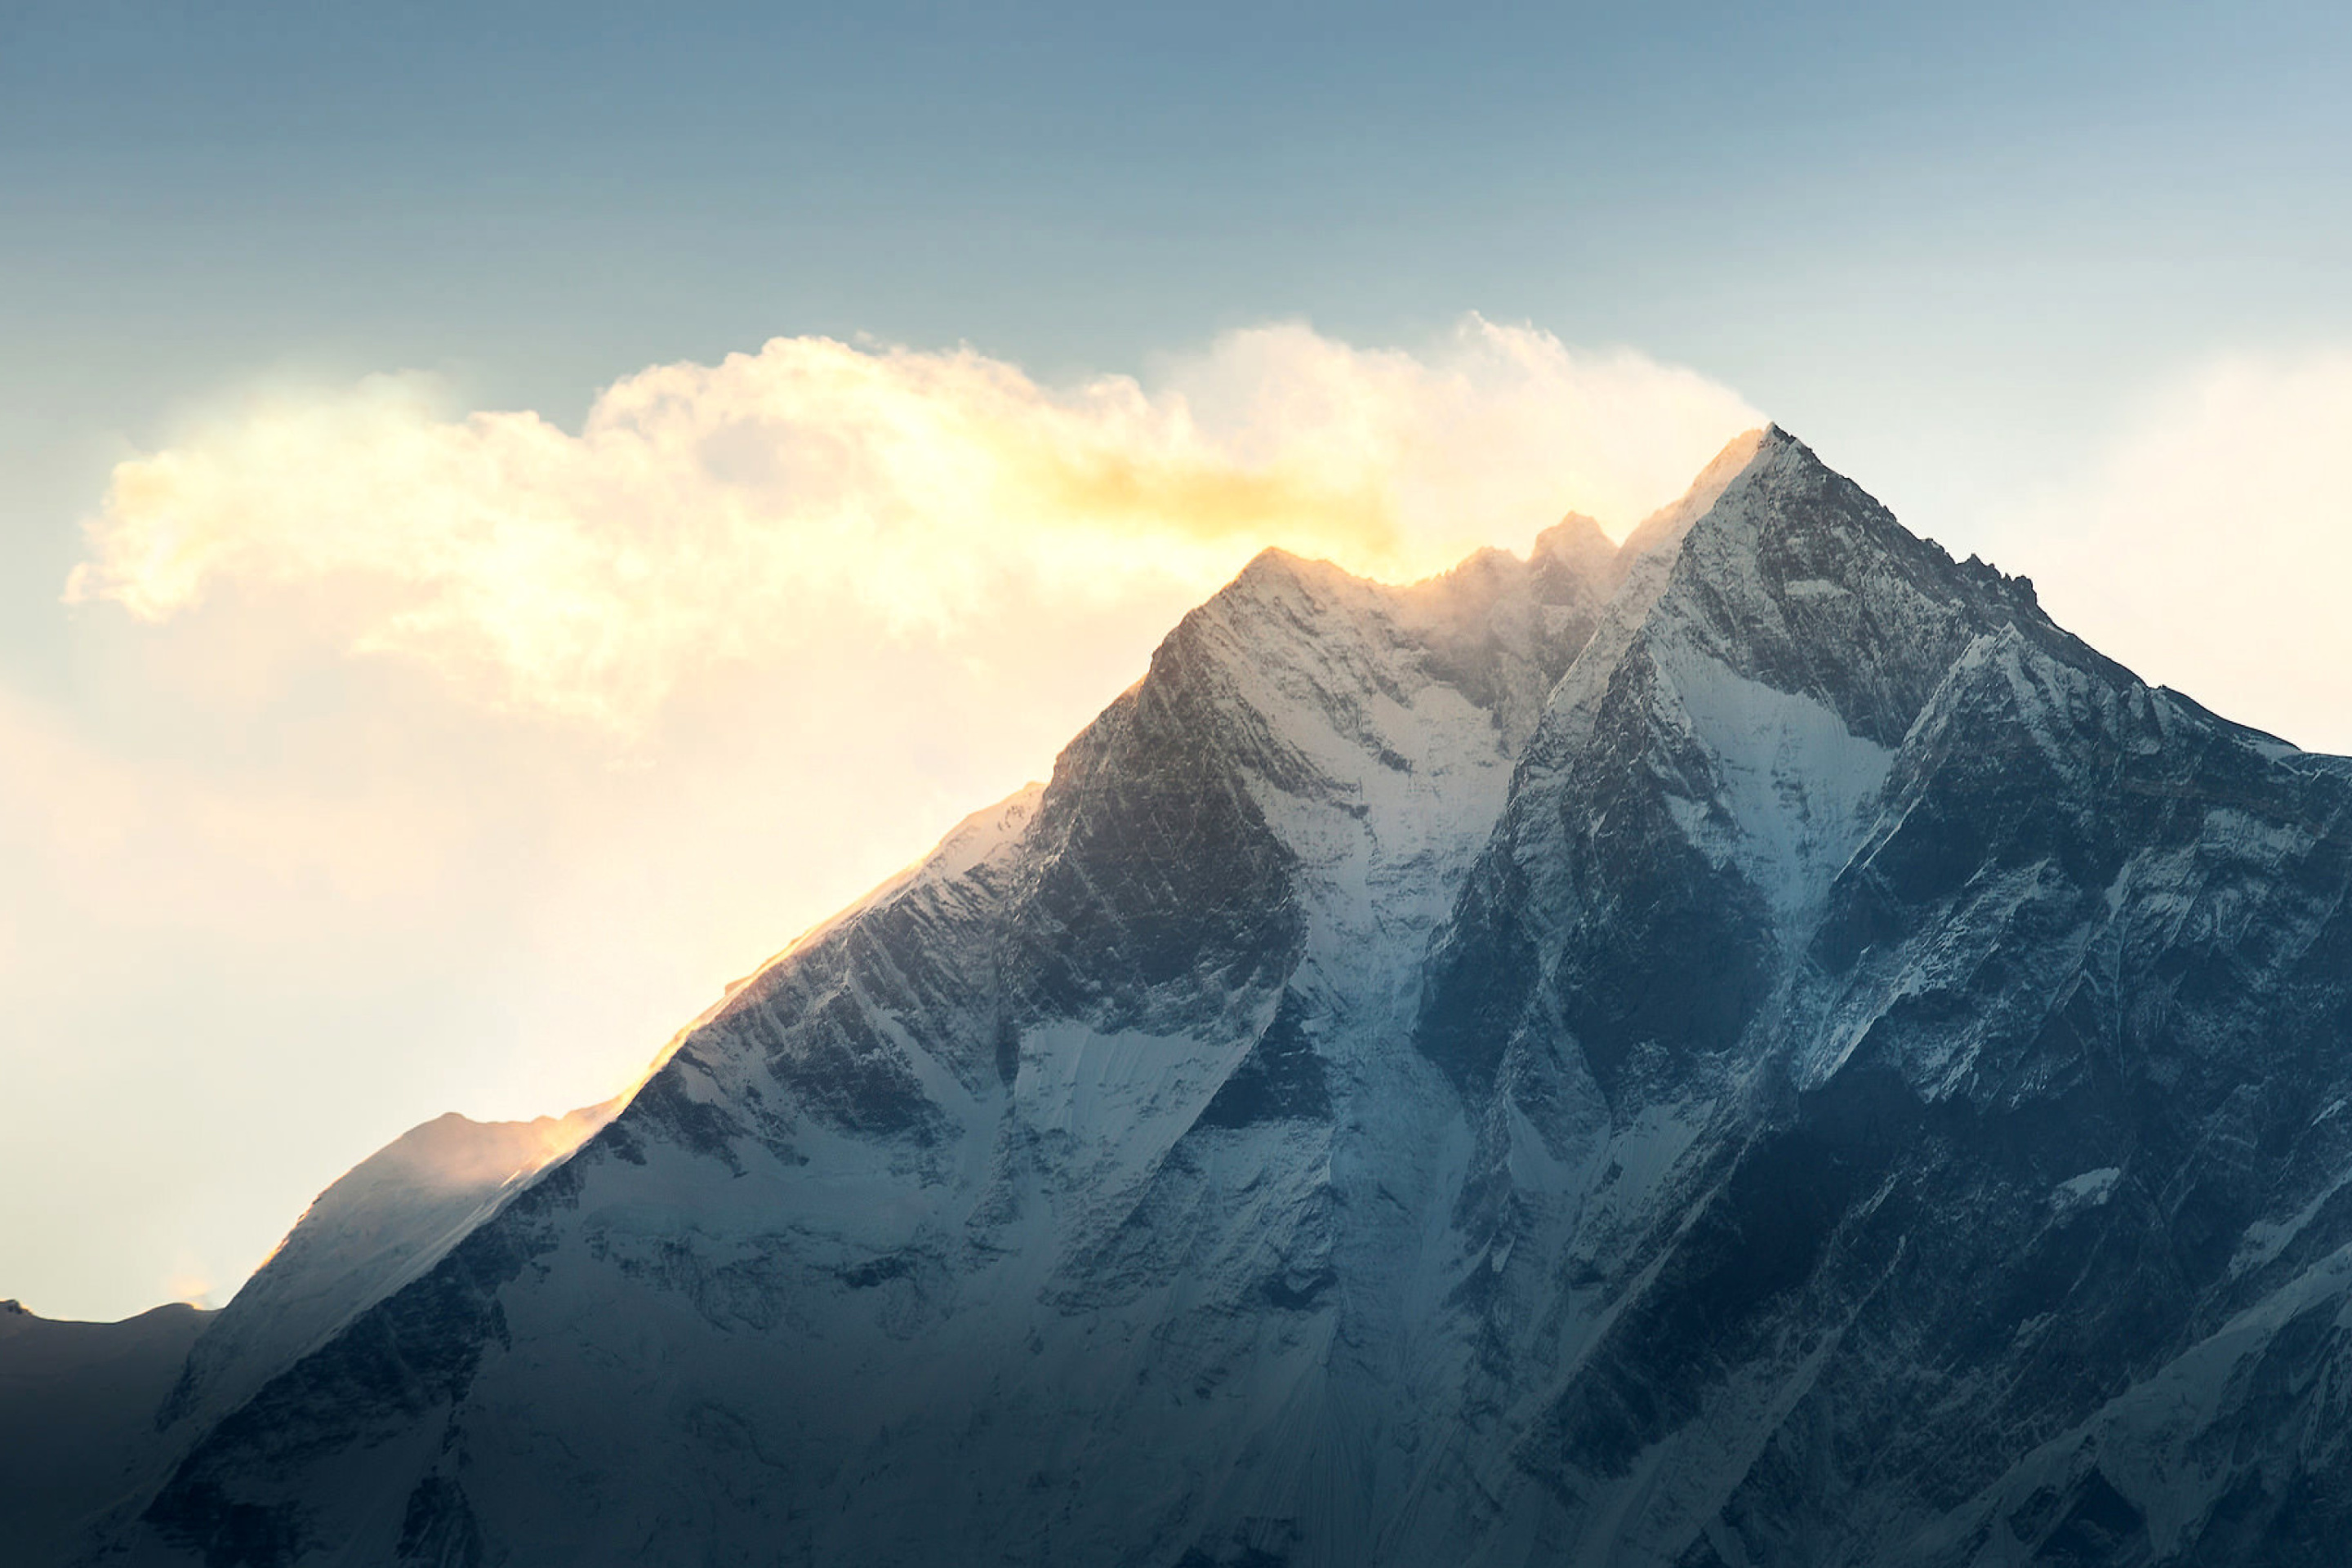 Обои Everest in Nepal 2880x1920